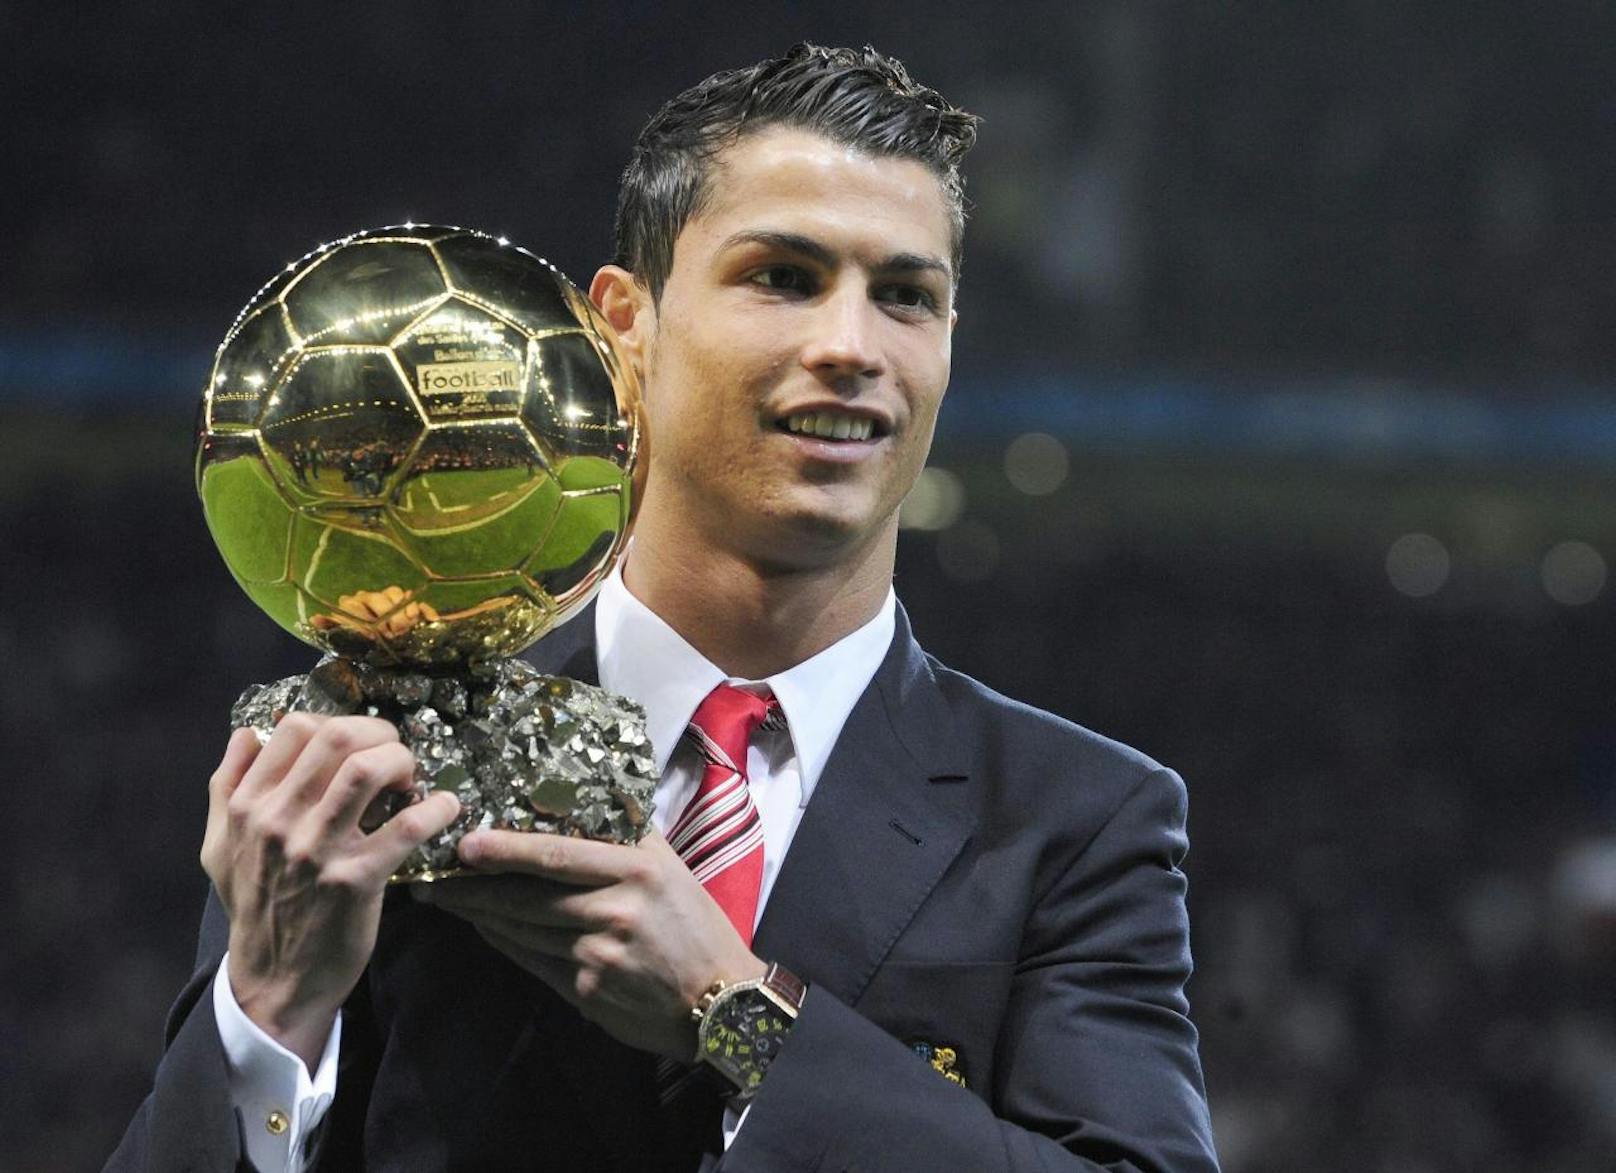 Im Dezember 2008 ist es endlich so weit. Cristiano Ronaldo wird mit dem Ballon d'Or zum besten Fußballer der Welt ausgezeichnet.